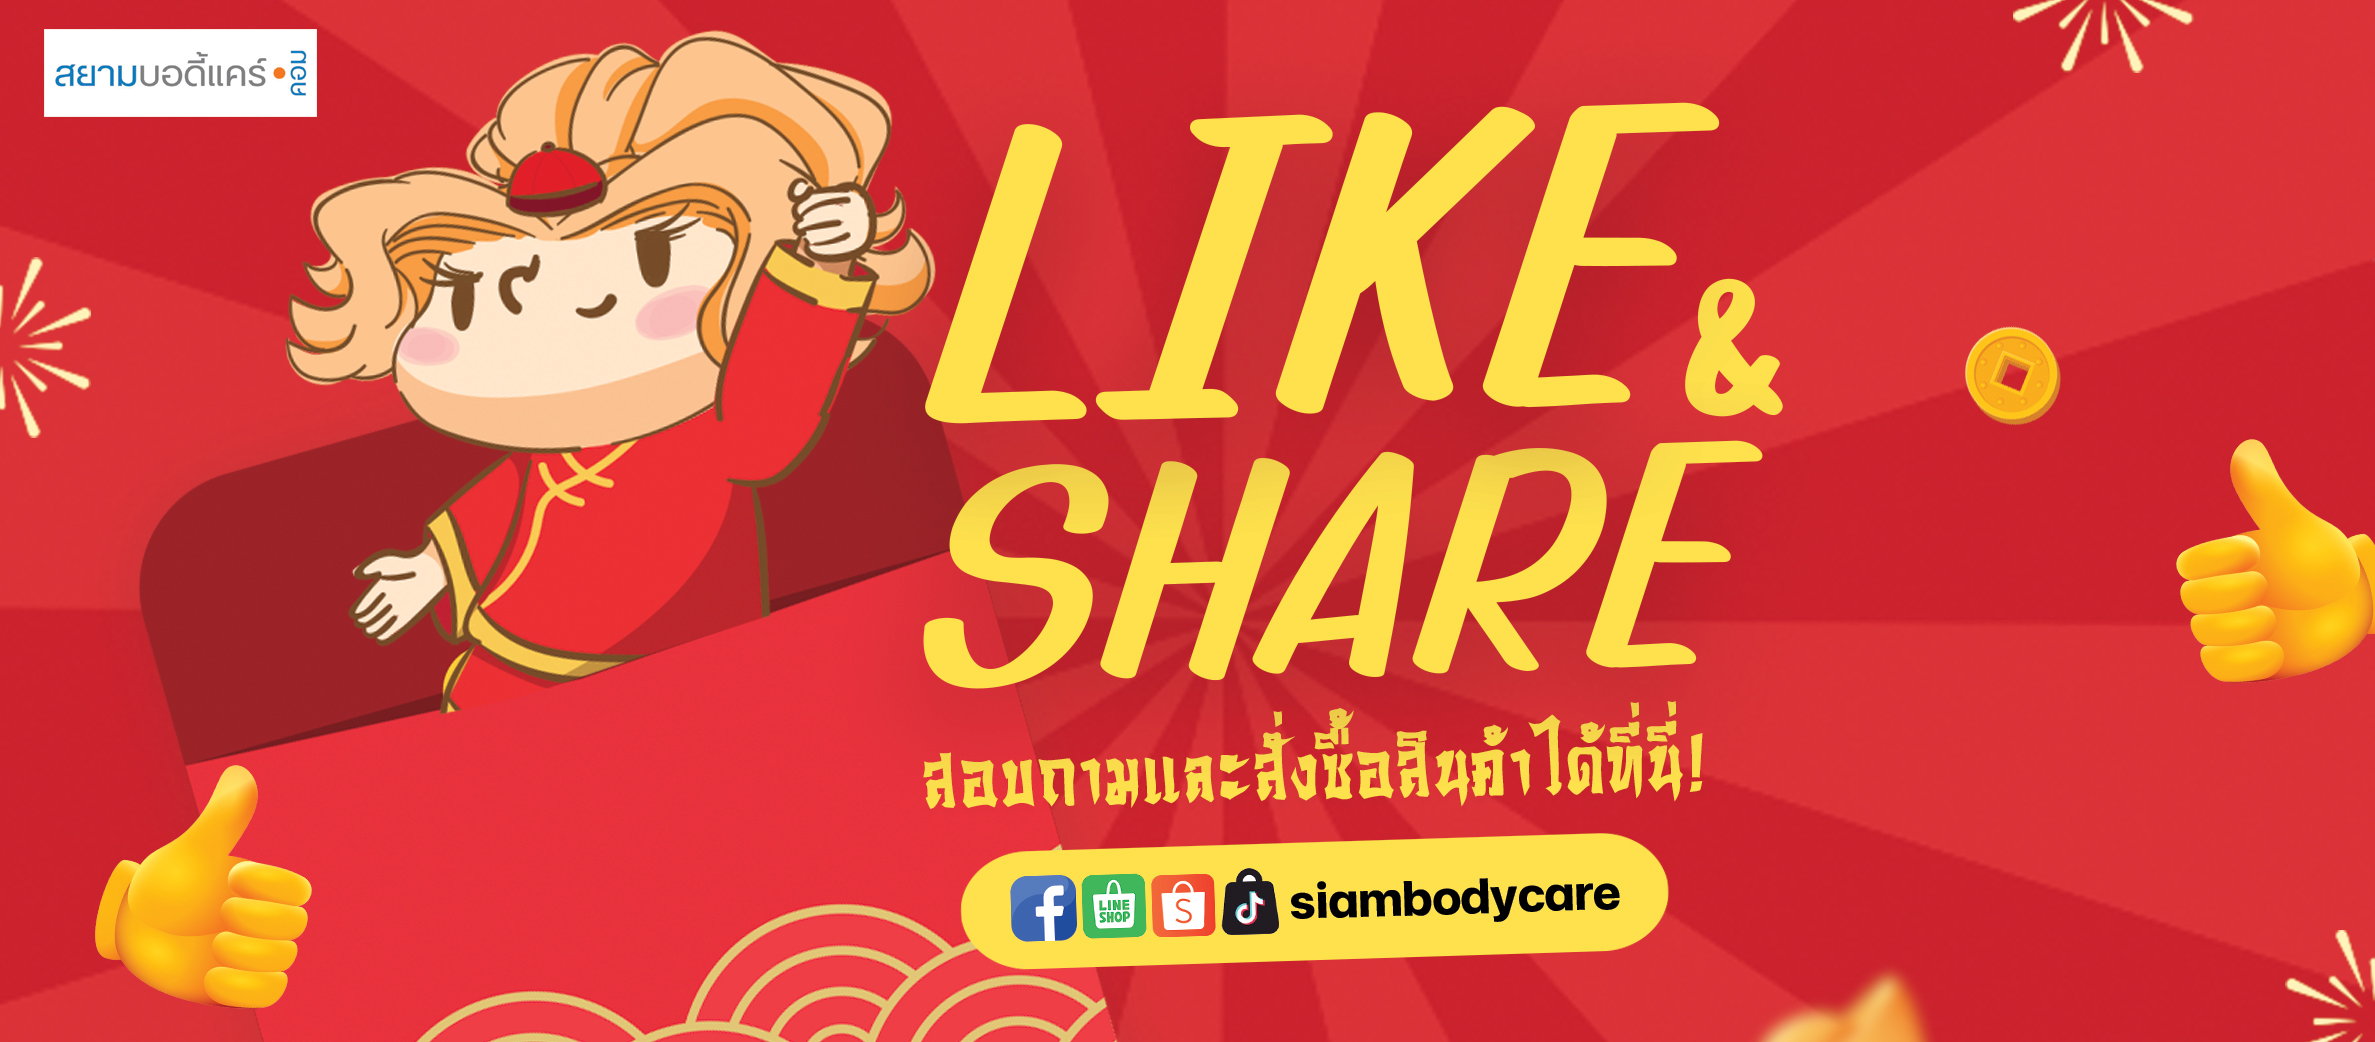 facebook Like Share ลด แลก แจก แถม สยามบอดี้แคร์